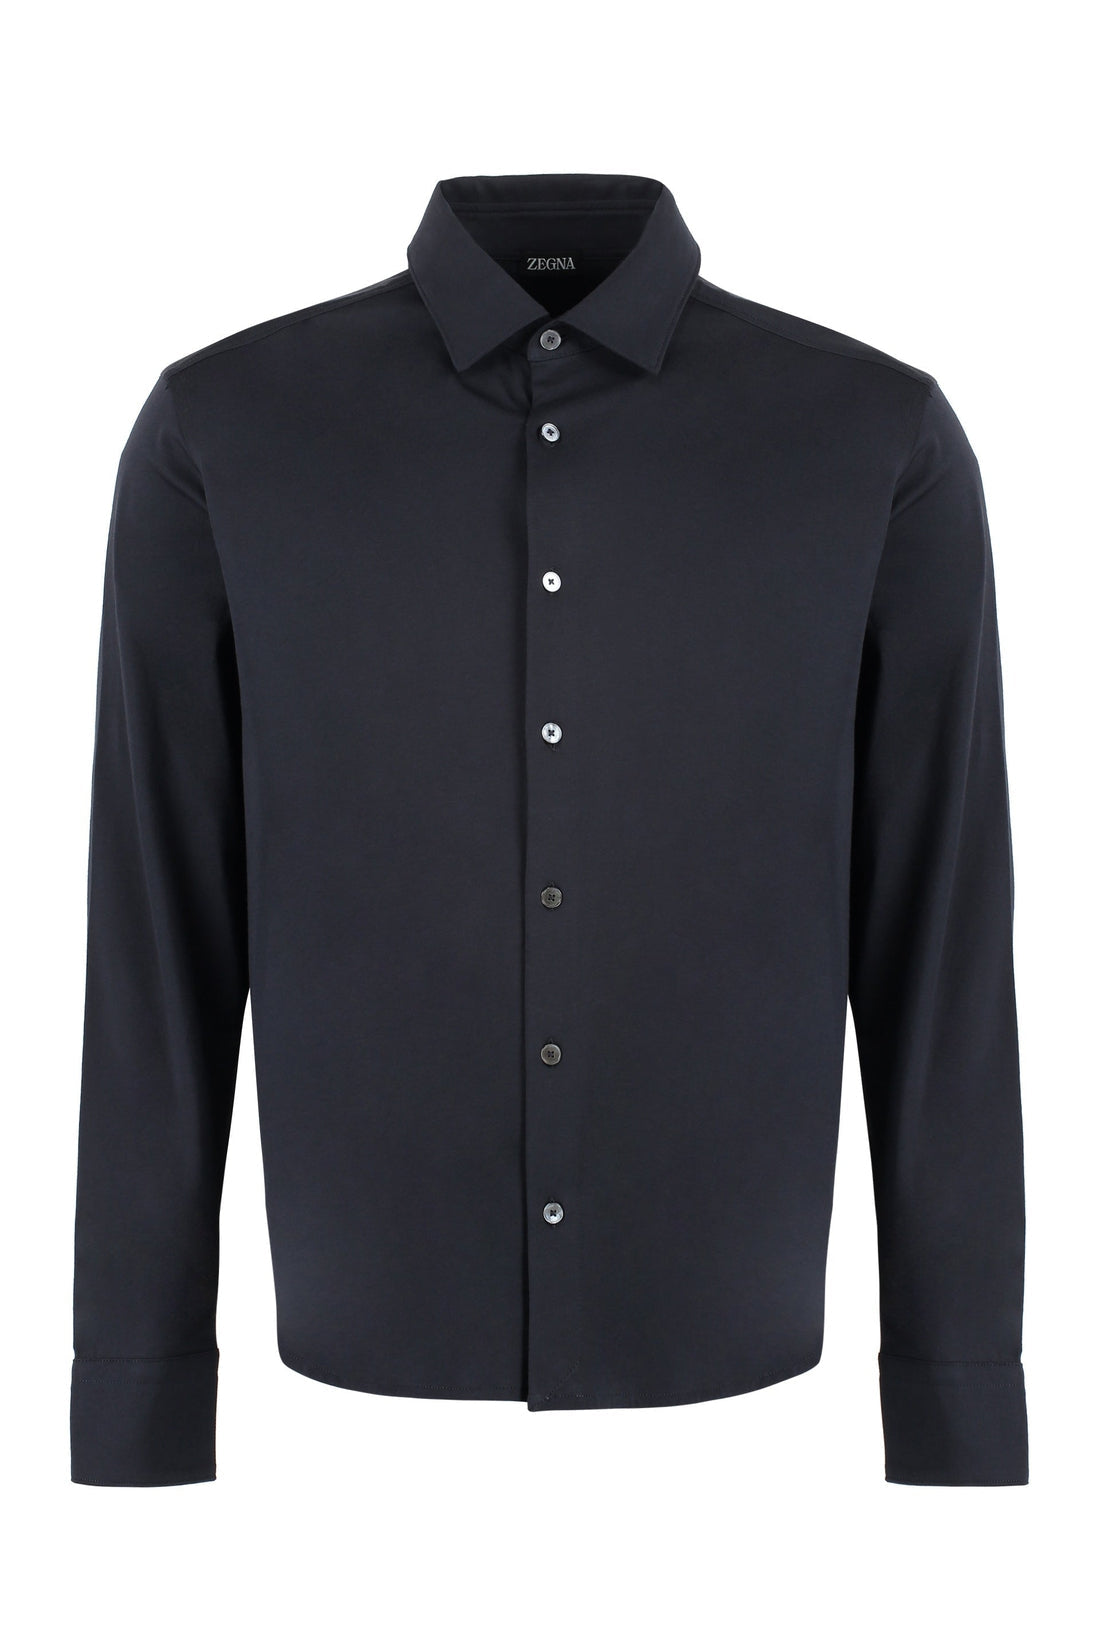 Zegna-OUTLET-SALE-Long sleeve cotton shirt-ARCHIVIST